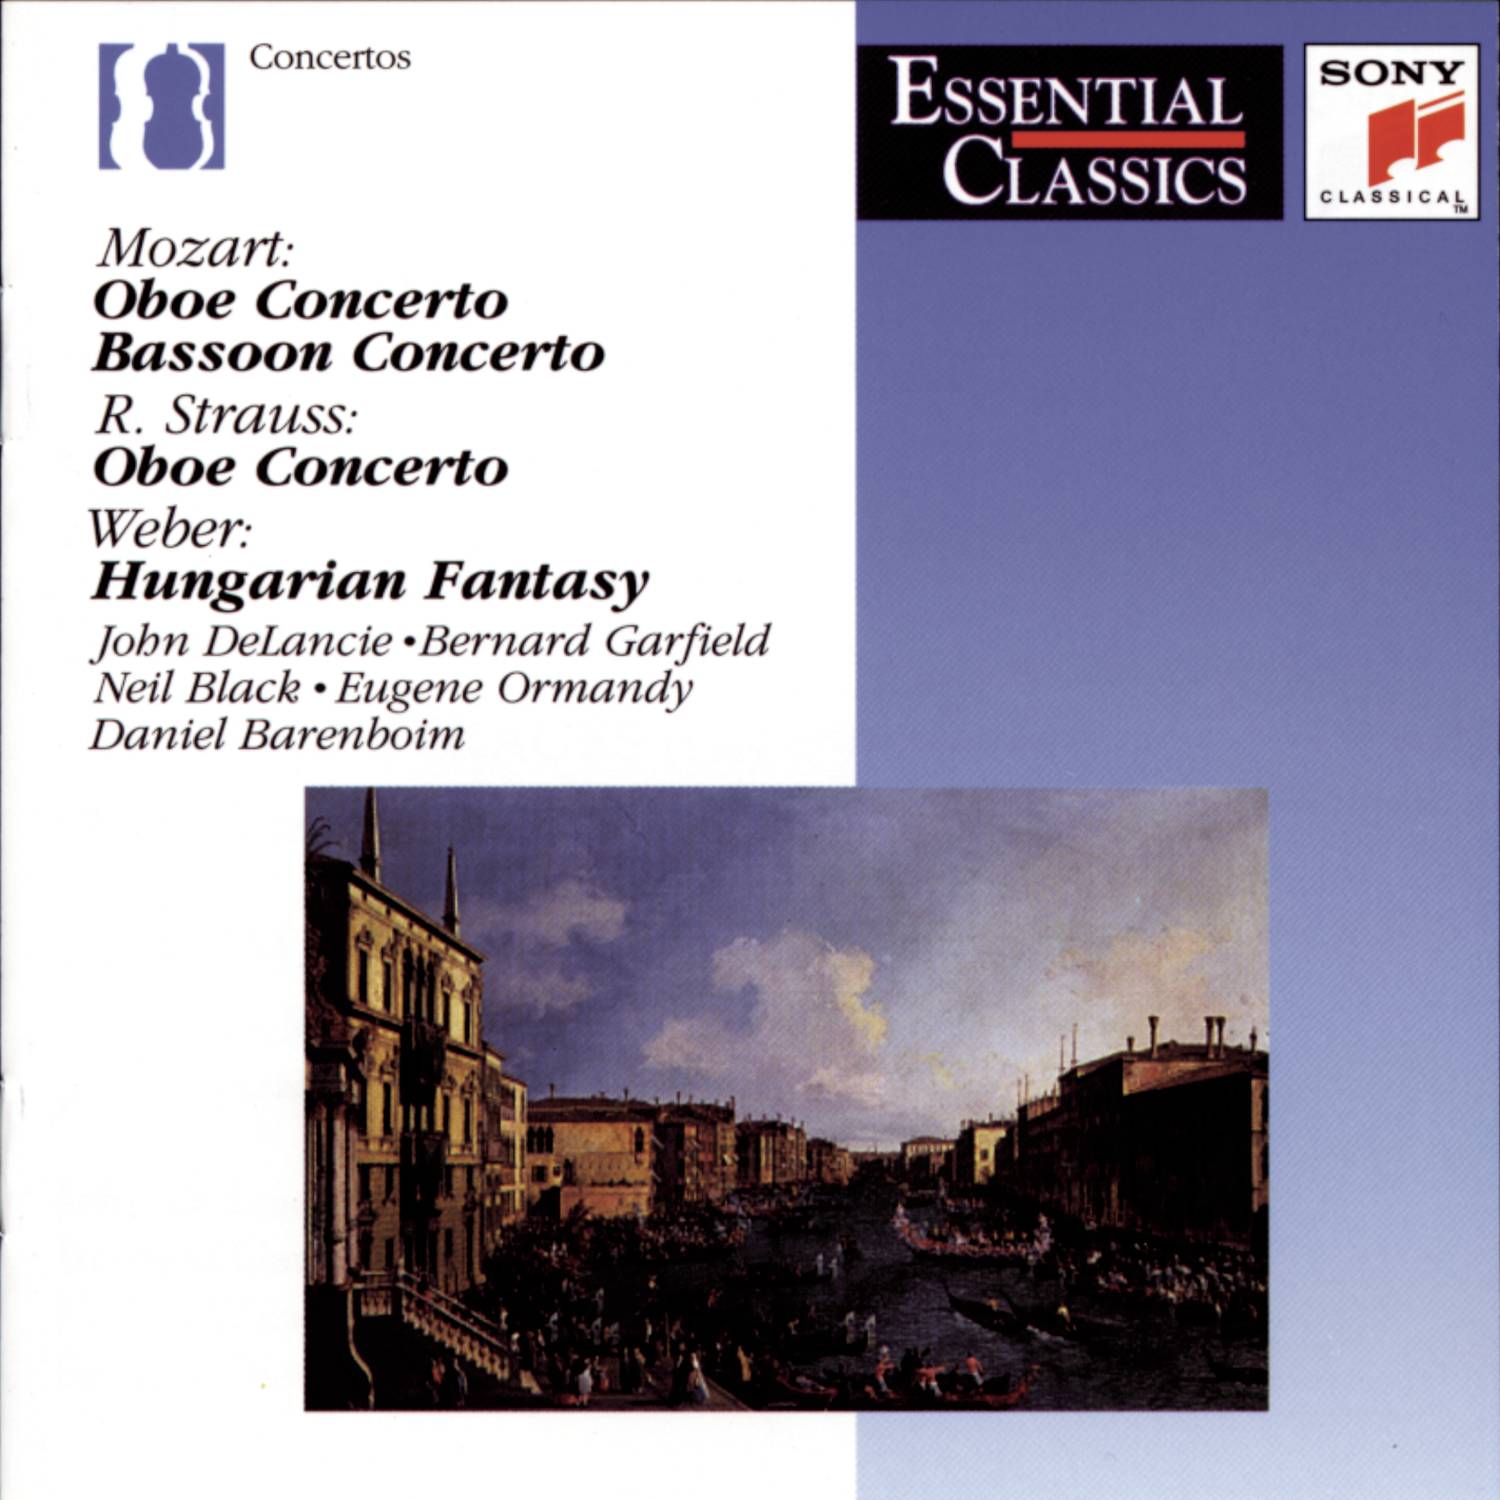 Concerto for Oboe and Orchestra in C Major, K.314 (285d): III. Rondo. Allegretto